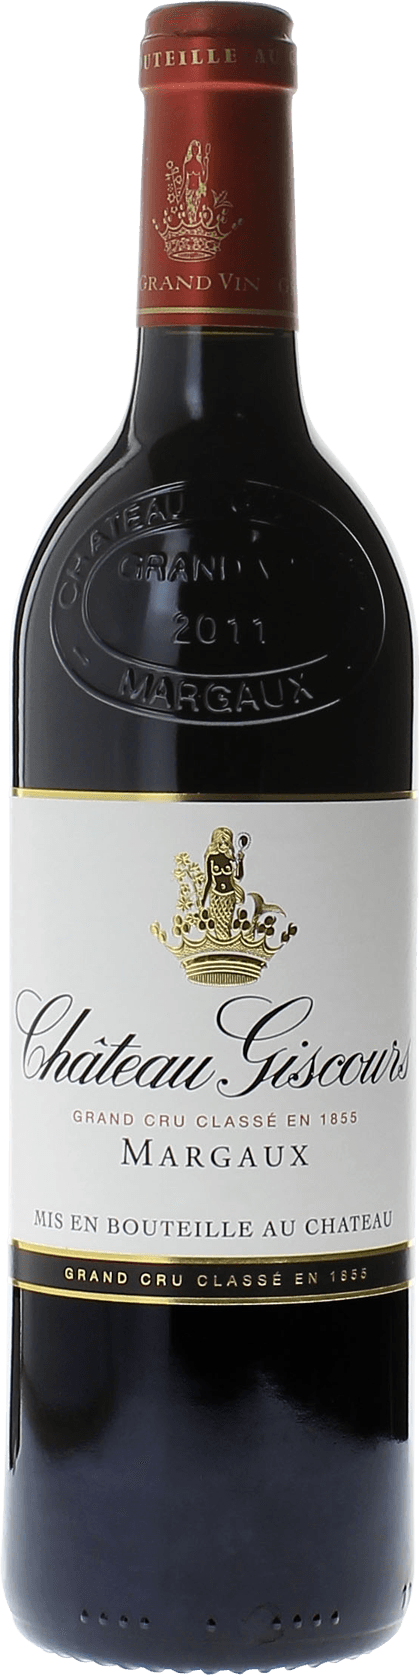 Giscours 1994 3me Grand cru class Margaux, Bordeaux rouge